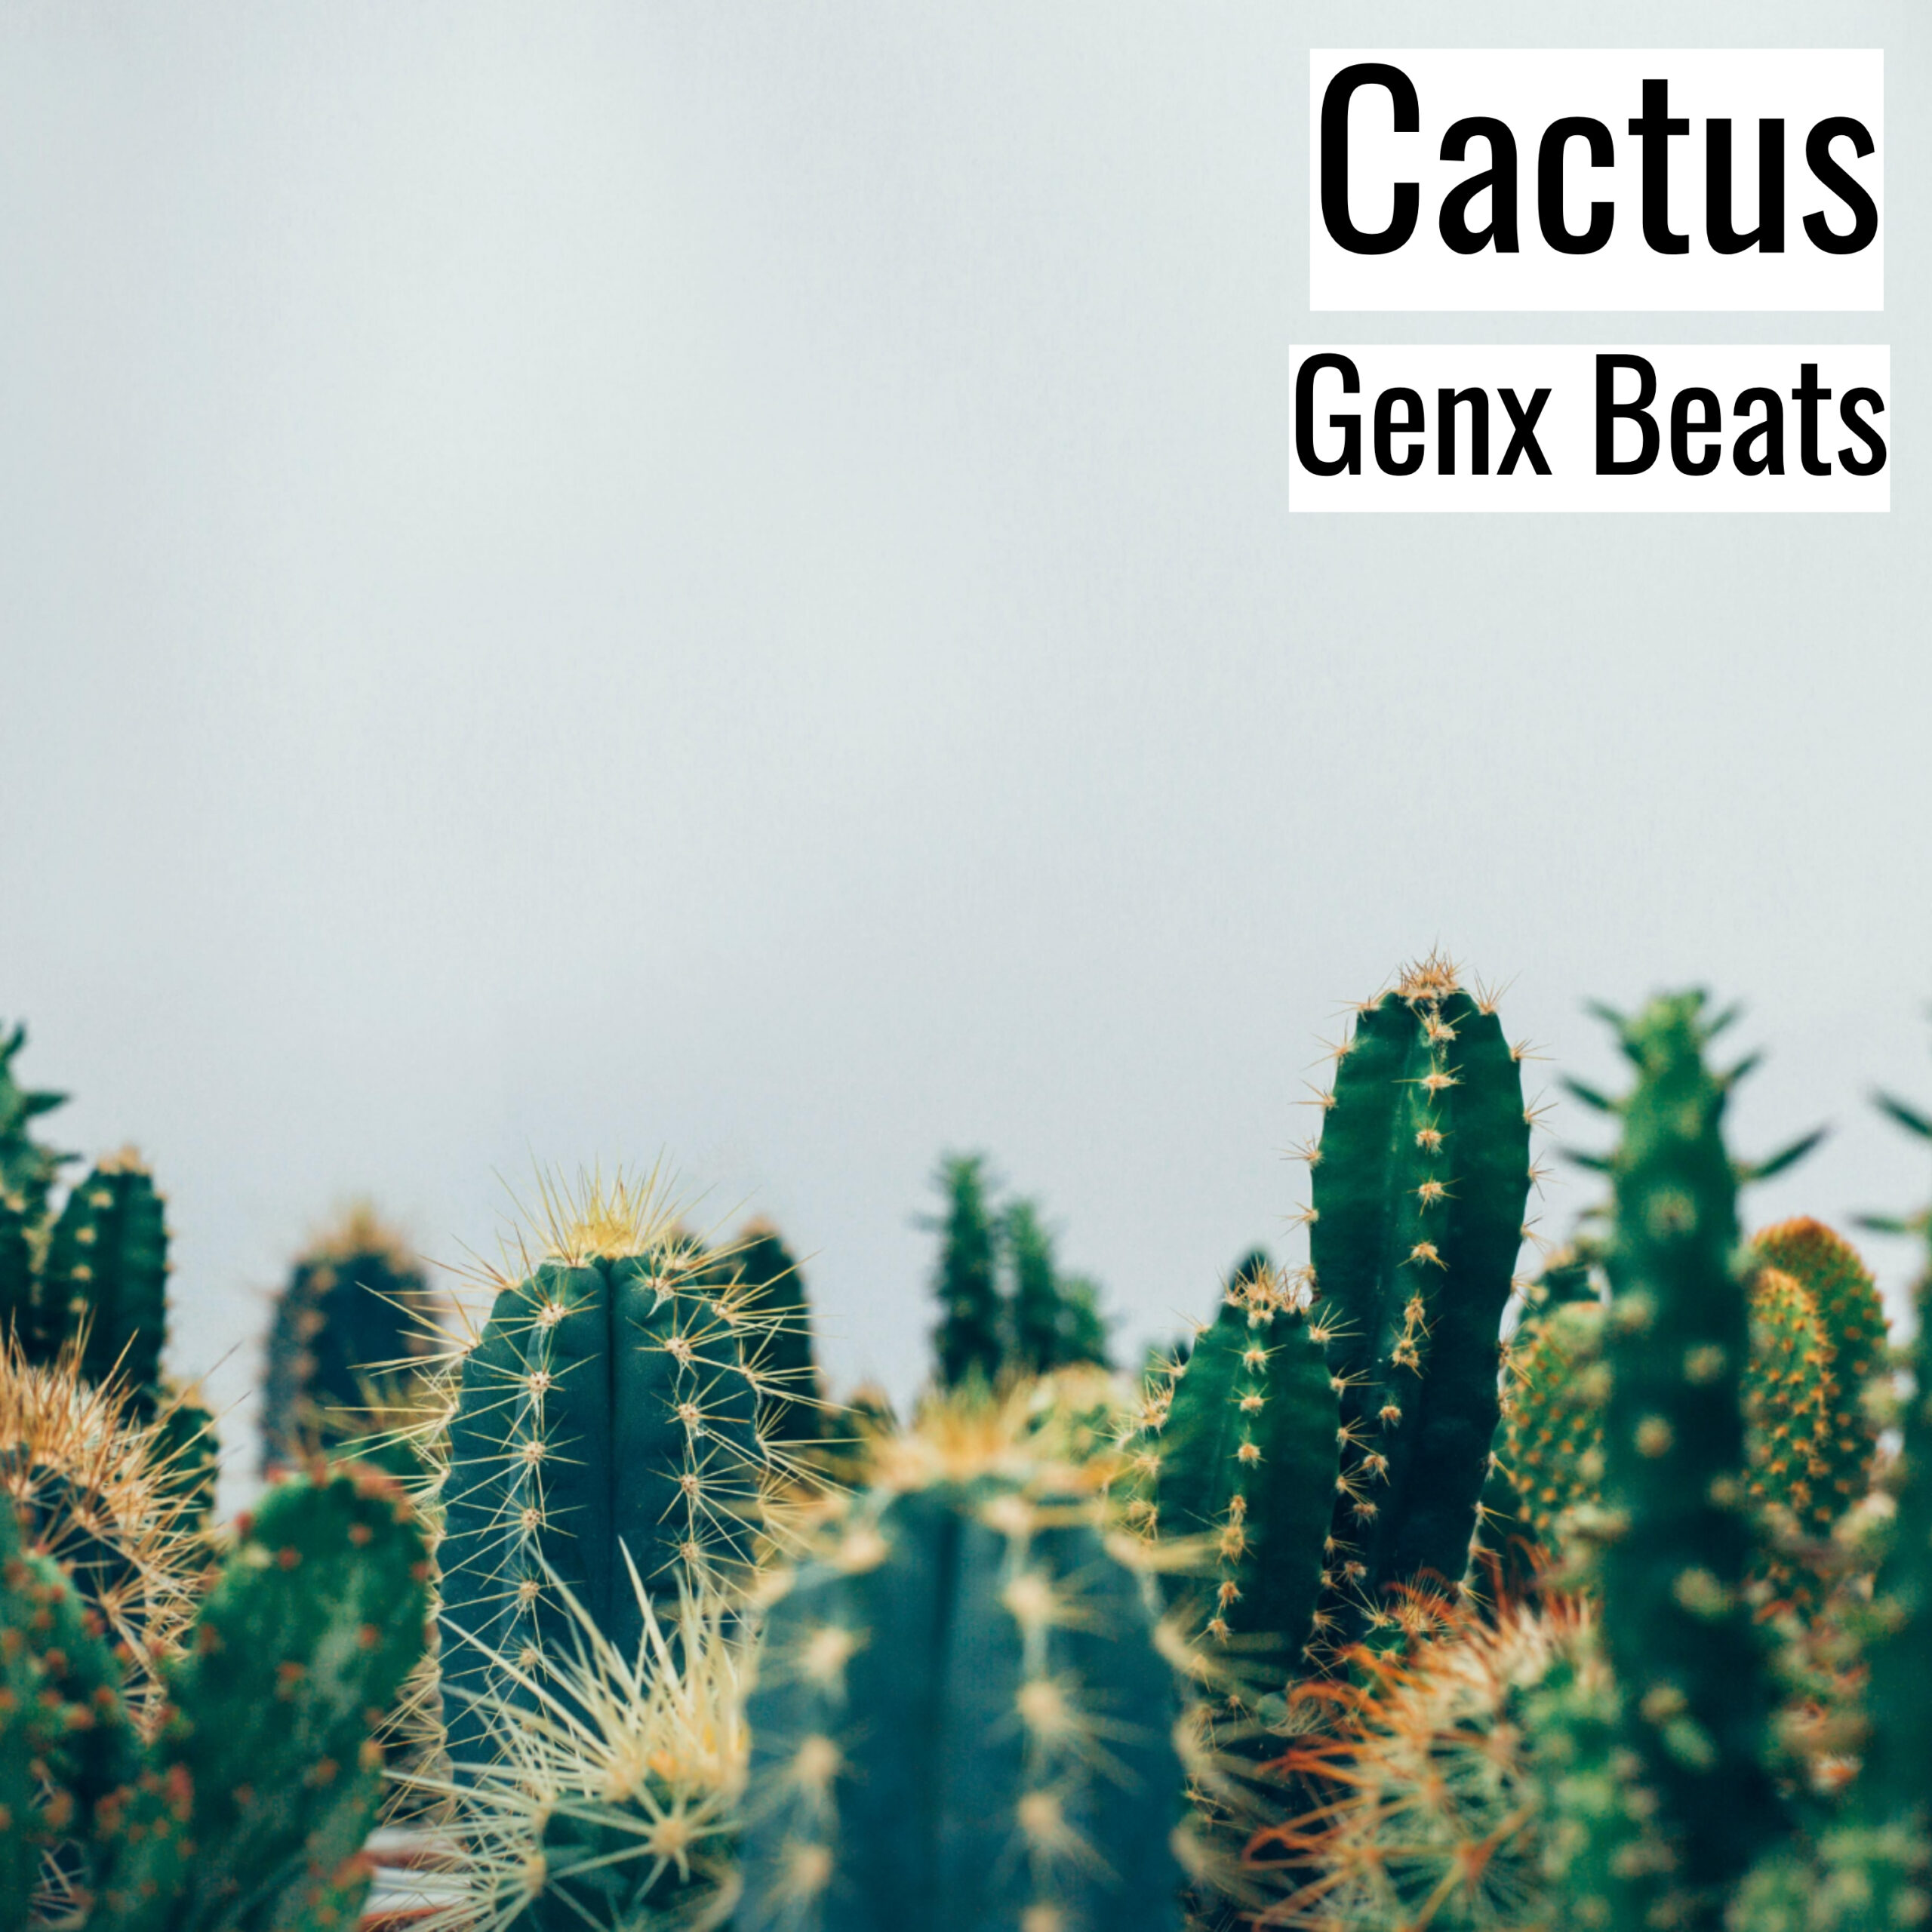 Cactus scaled